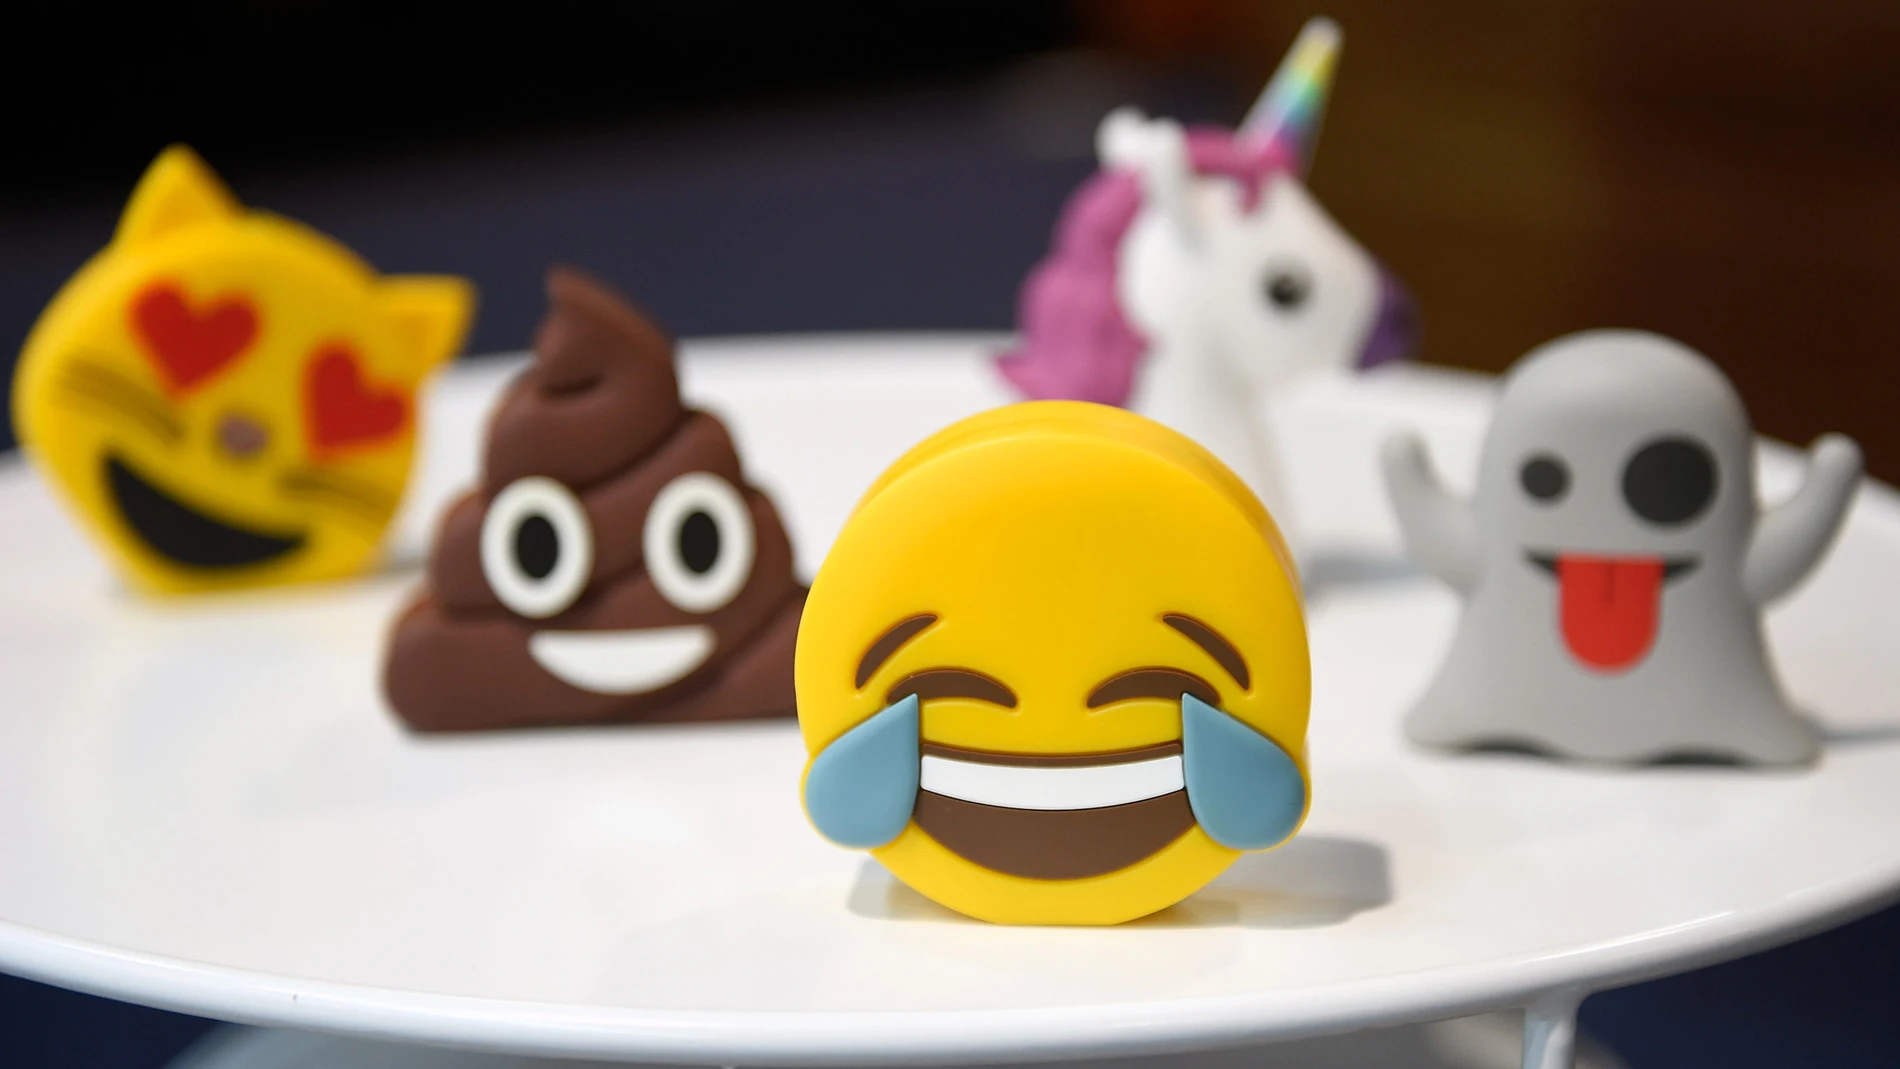  ¿Cuáles fueron los primeros emojis?